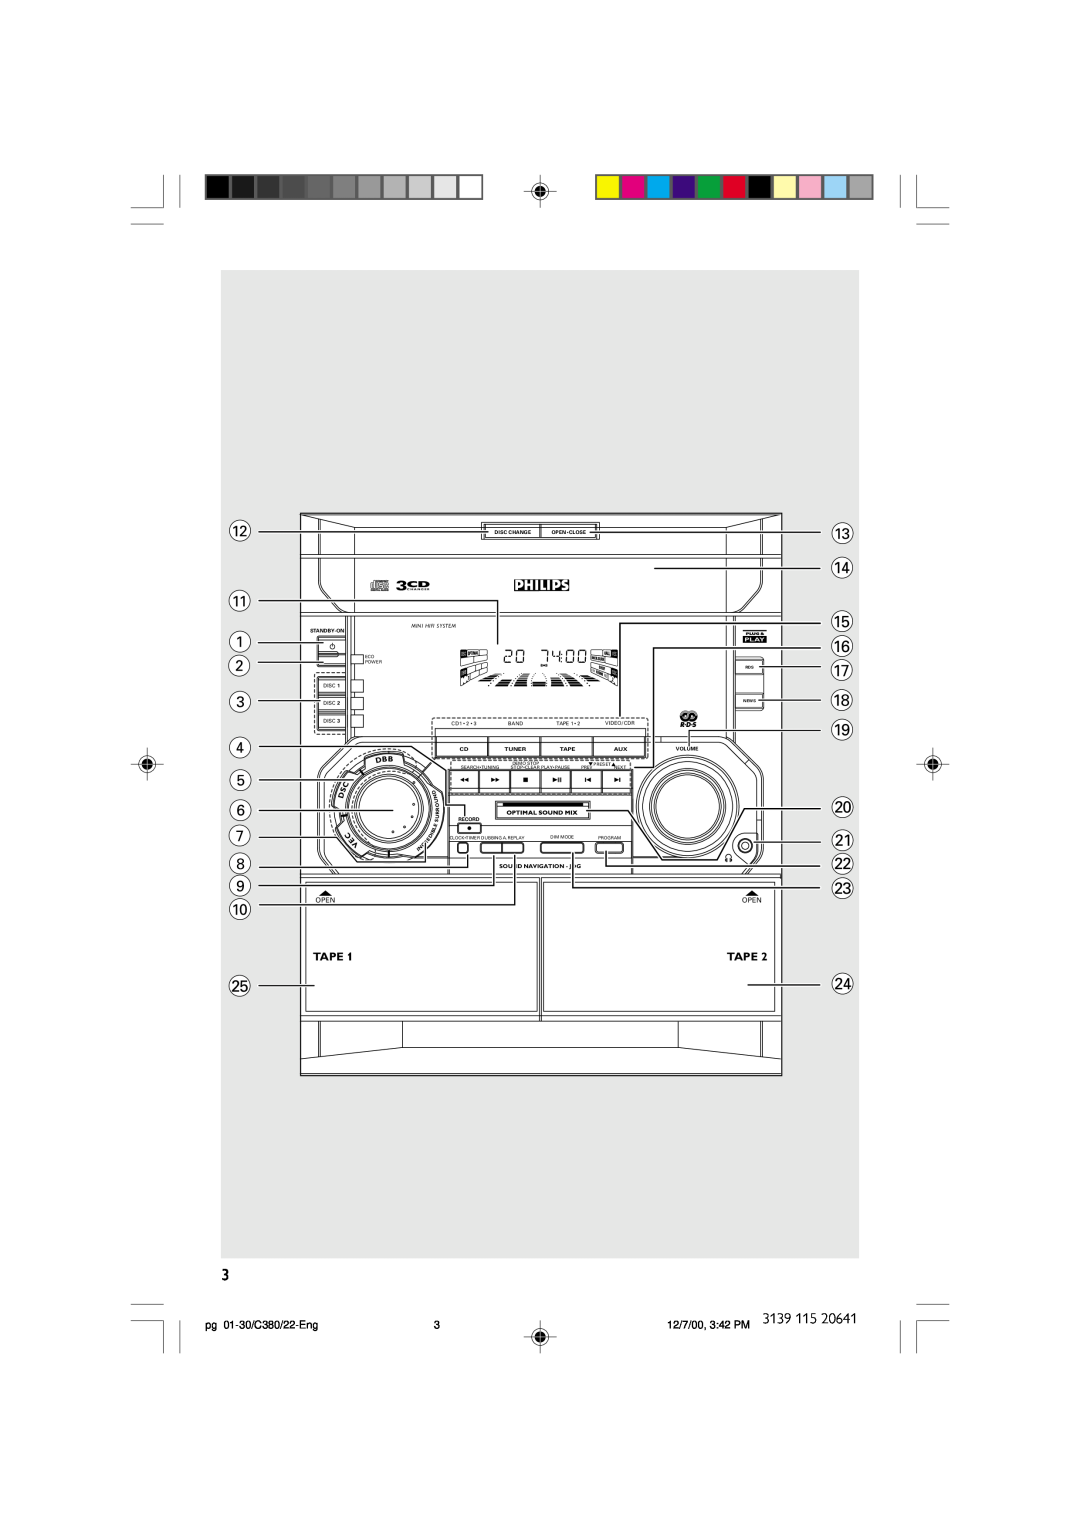 Philips FW-C380 manual # $ %, C E, Tape, pg 01-30/C380/22-Eng, 12/7/00, 3 42 PM, Mini Hifi System 